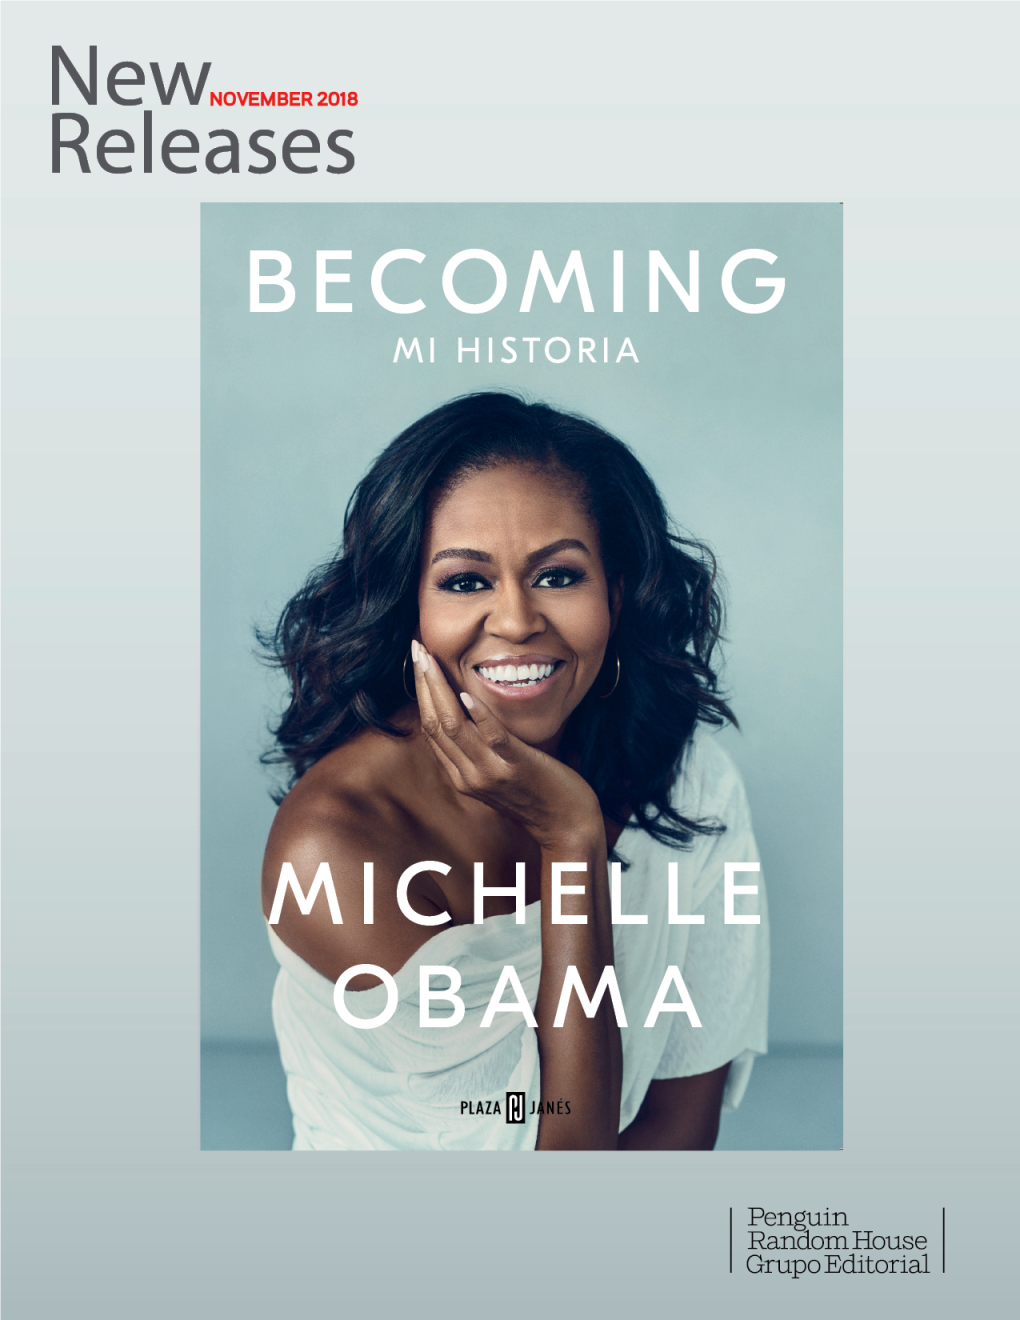 NOVEMBER 2018 Becoming (Spanish Edition) Michelle Obama Summary Un Íntimo, Poderoso E Inspirador Libro De Memorias De La Ex Primera Dama De Estados Unidos